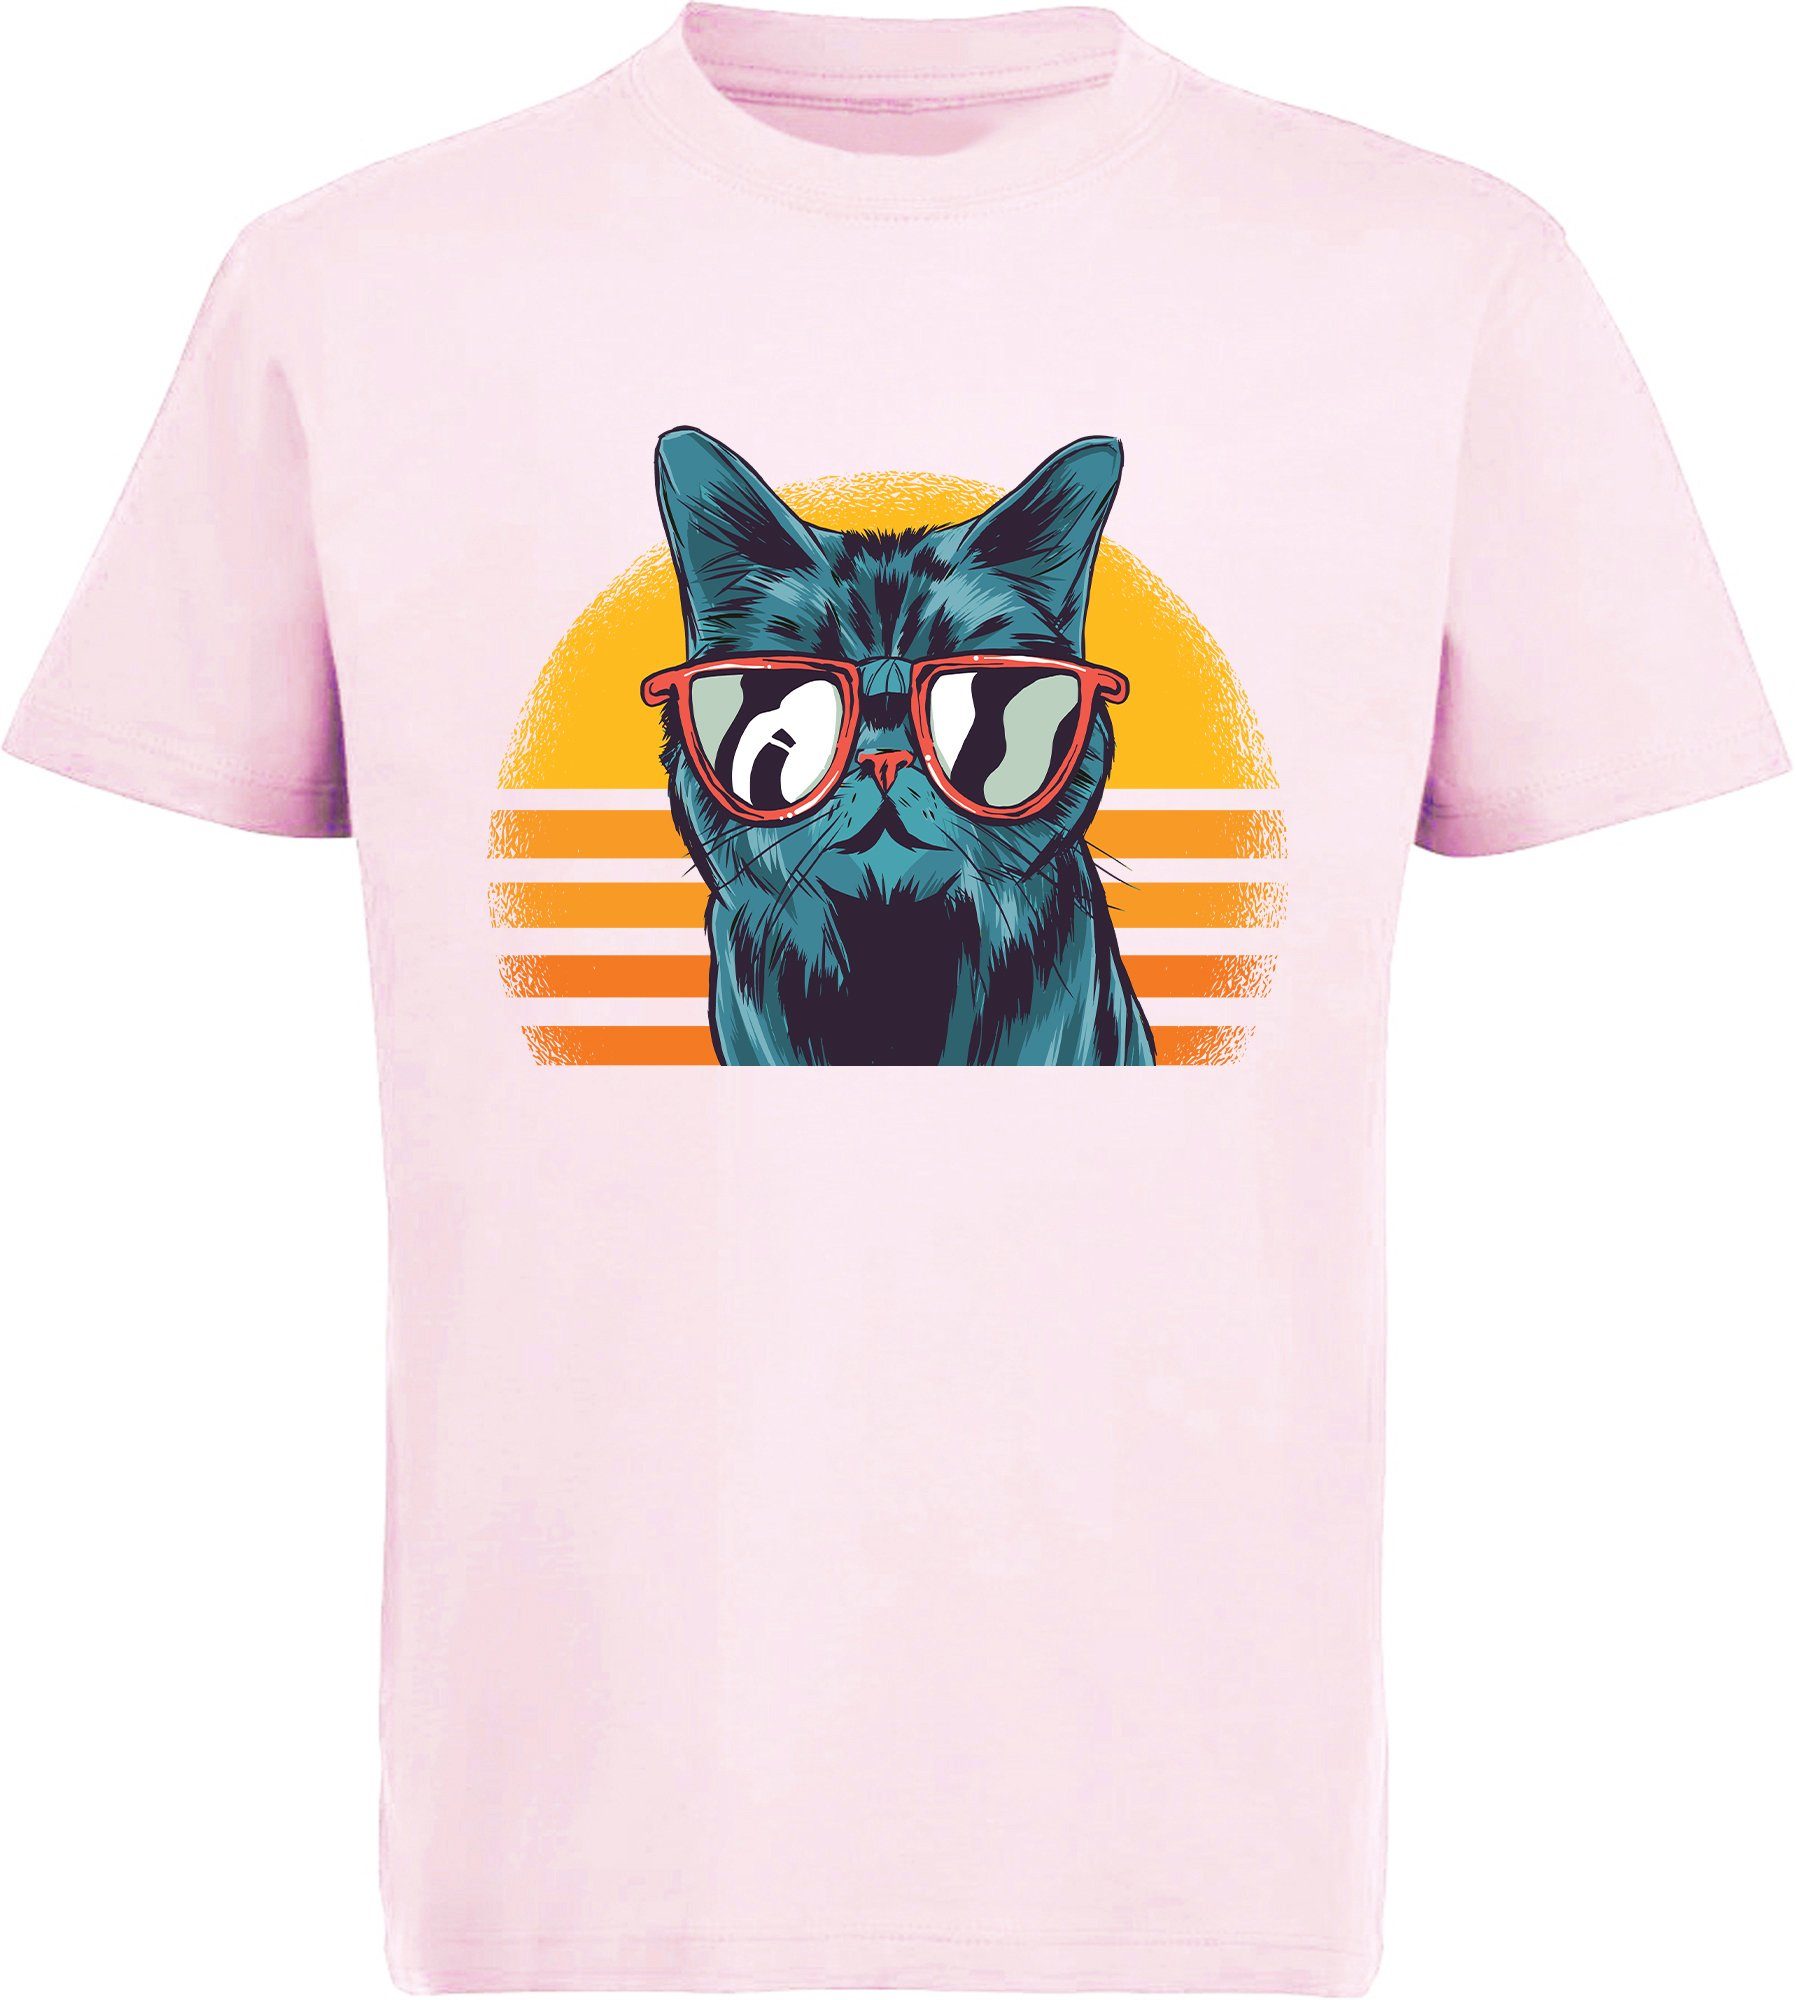 MyDesign24 Print-Shirt bedrucktes Kinder Retro weiß, rot, rosa, Baumwollshirt mit Mädchen mit coole Sonnenbrille Katze, Katze i102 schwarz, T-Shirt